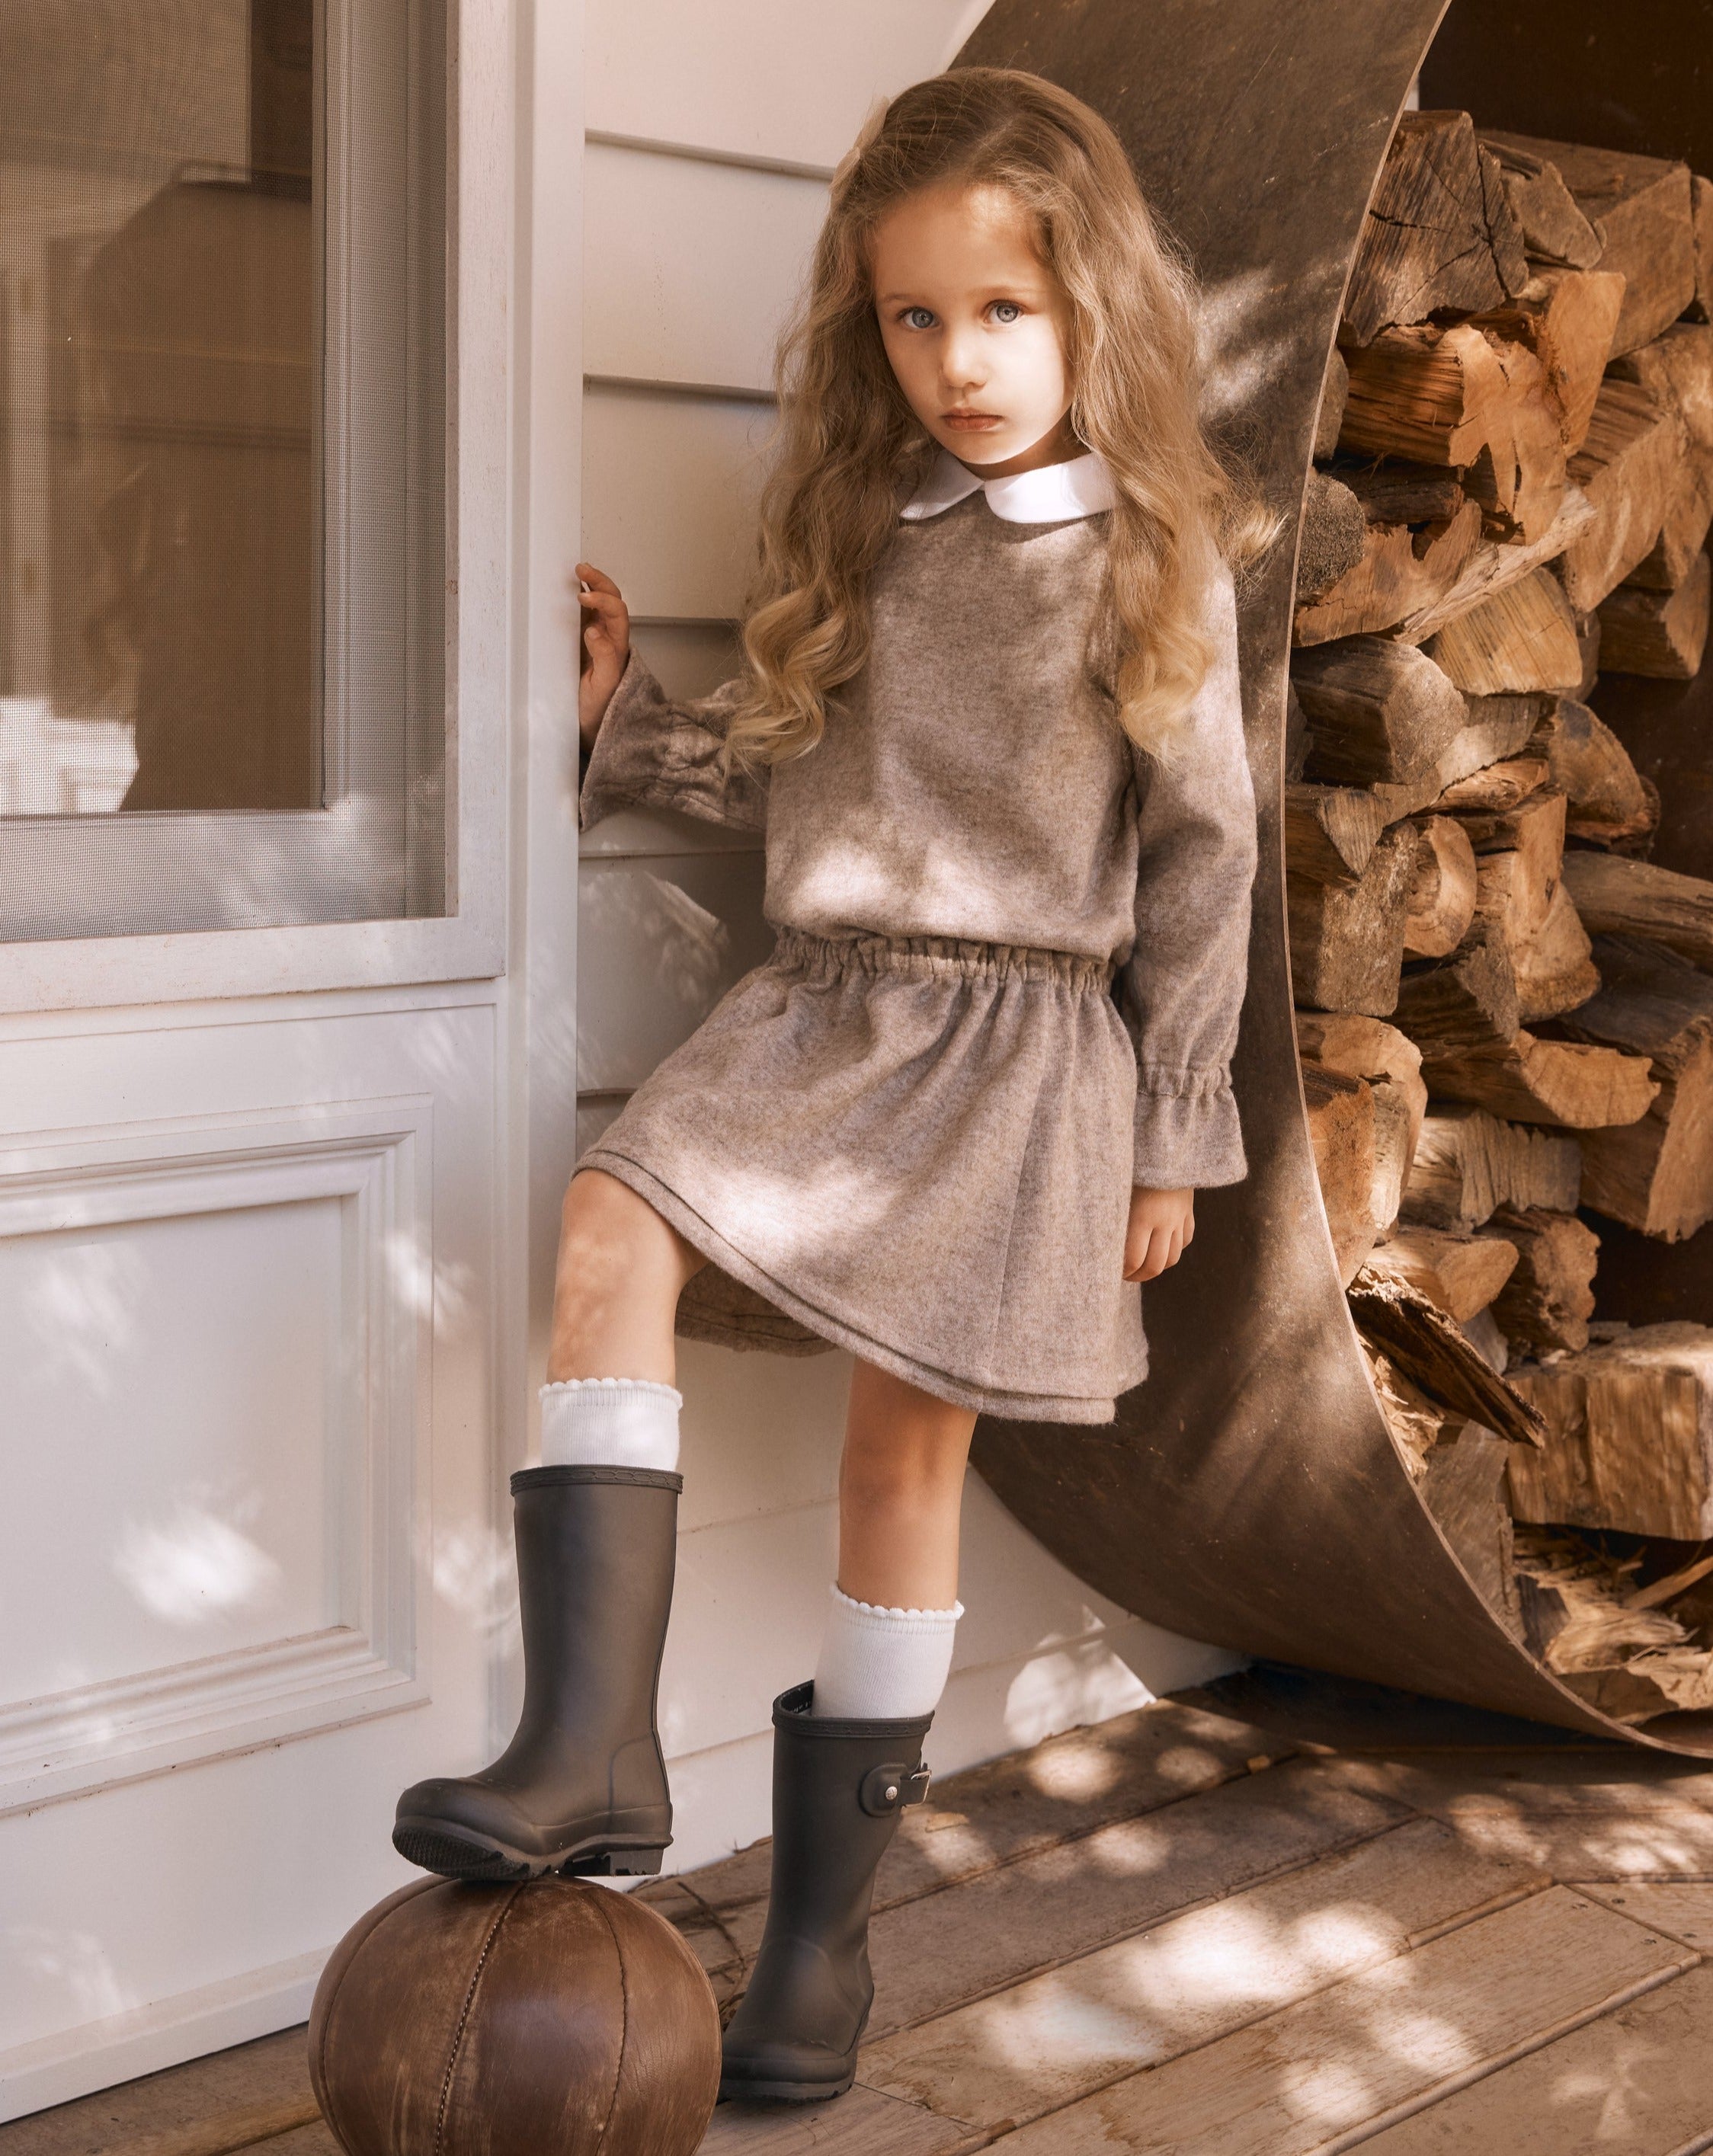 Girls' Designer Skirt, Oatmeal, ages 1 to 6.